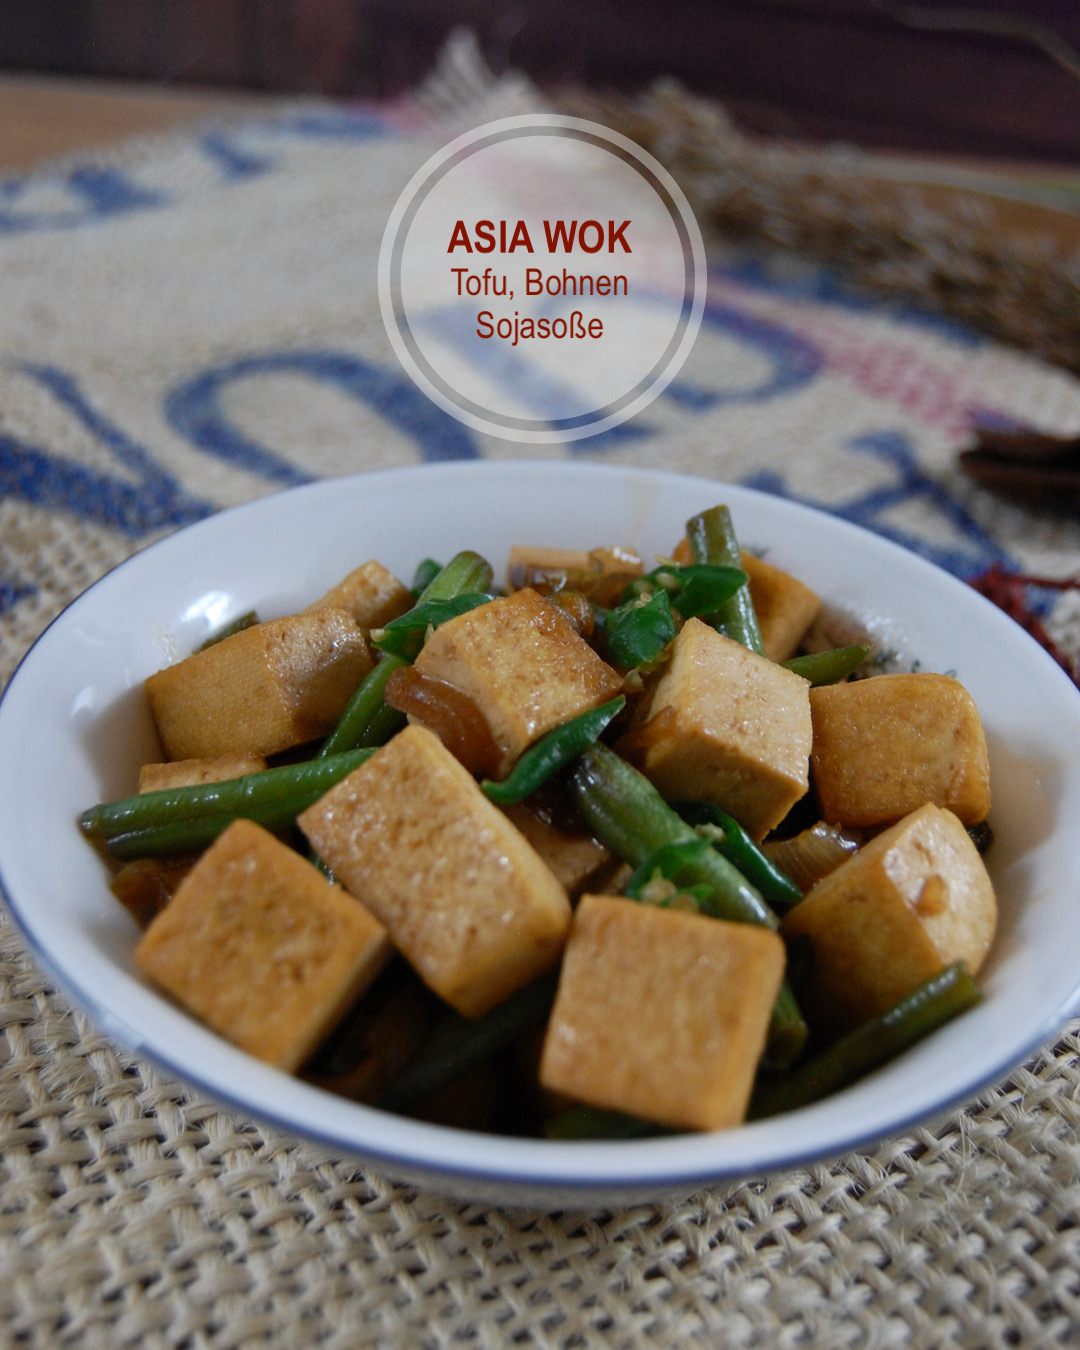 Asia Wok Gemüse mit Tofu, Bohnen, Sojasoße